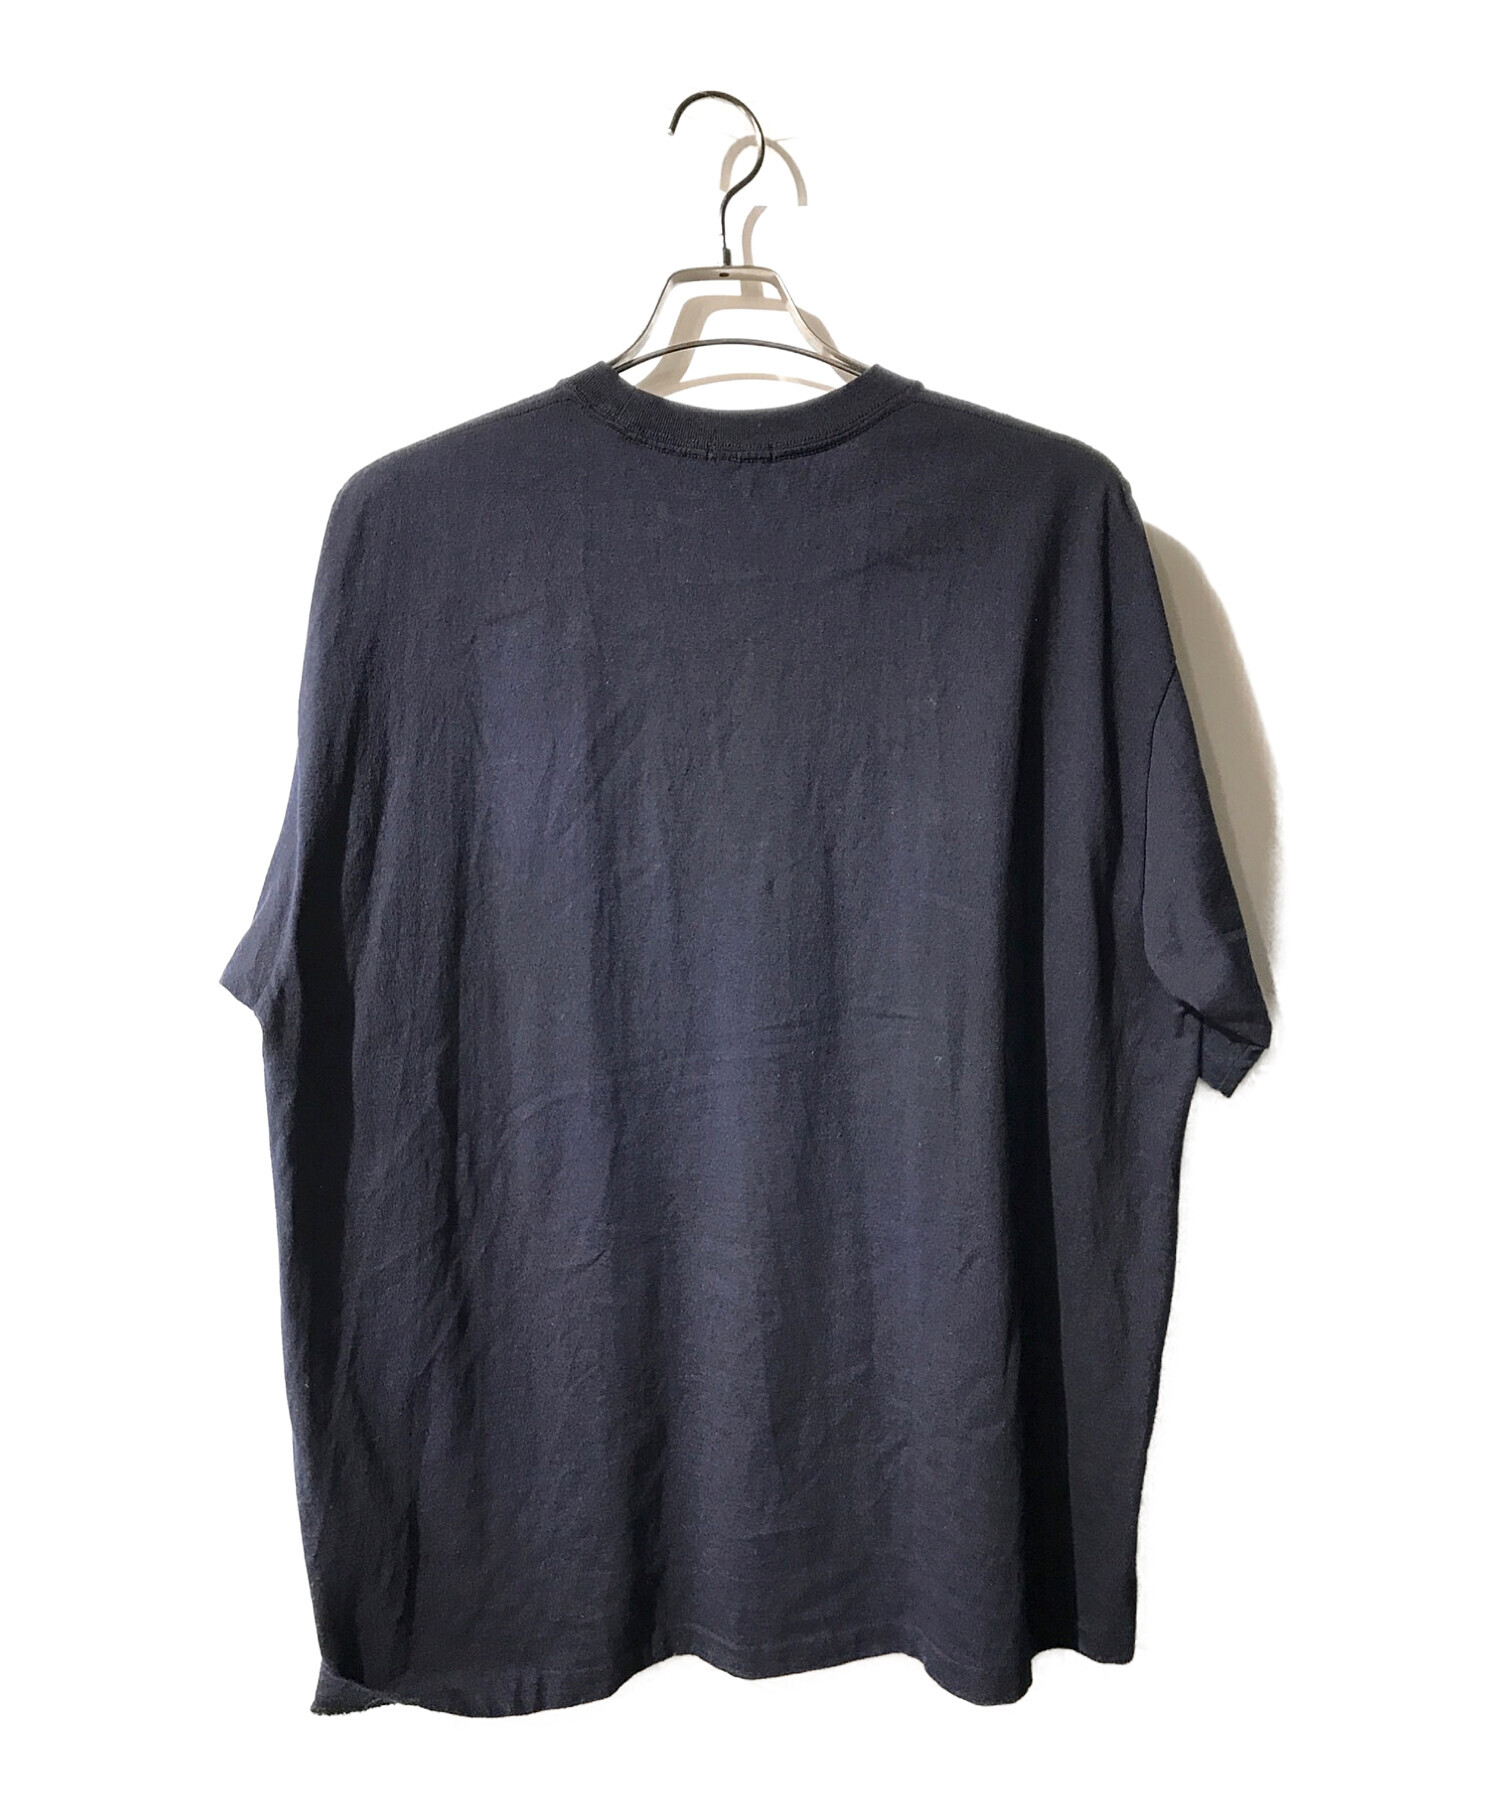 COMOLI コモリ Tシャツ・カットソー 4(XL位) 濃紺